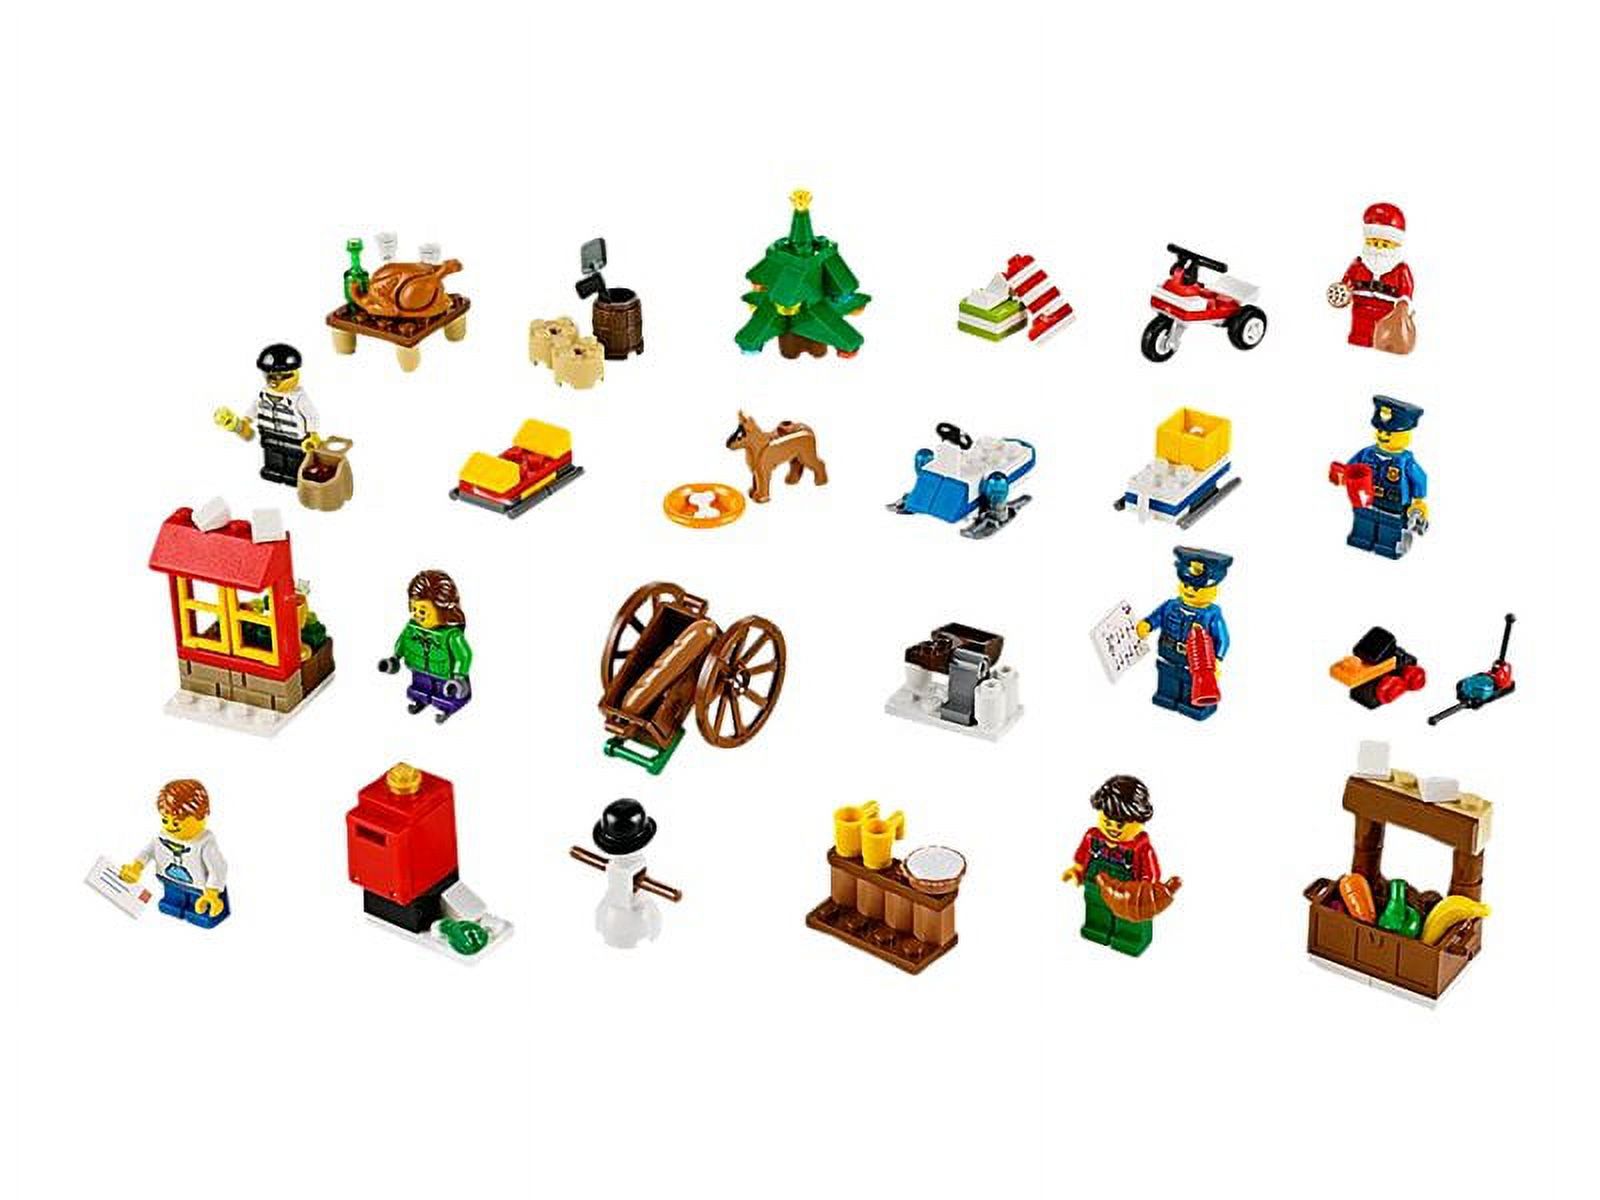 LEGO City 60063 - Advent Calendar - image 1 of 7